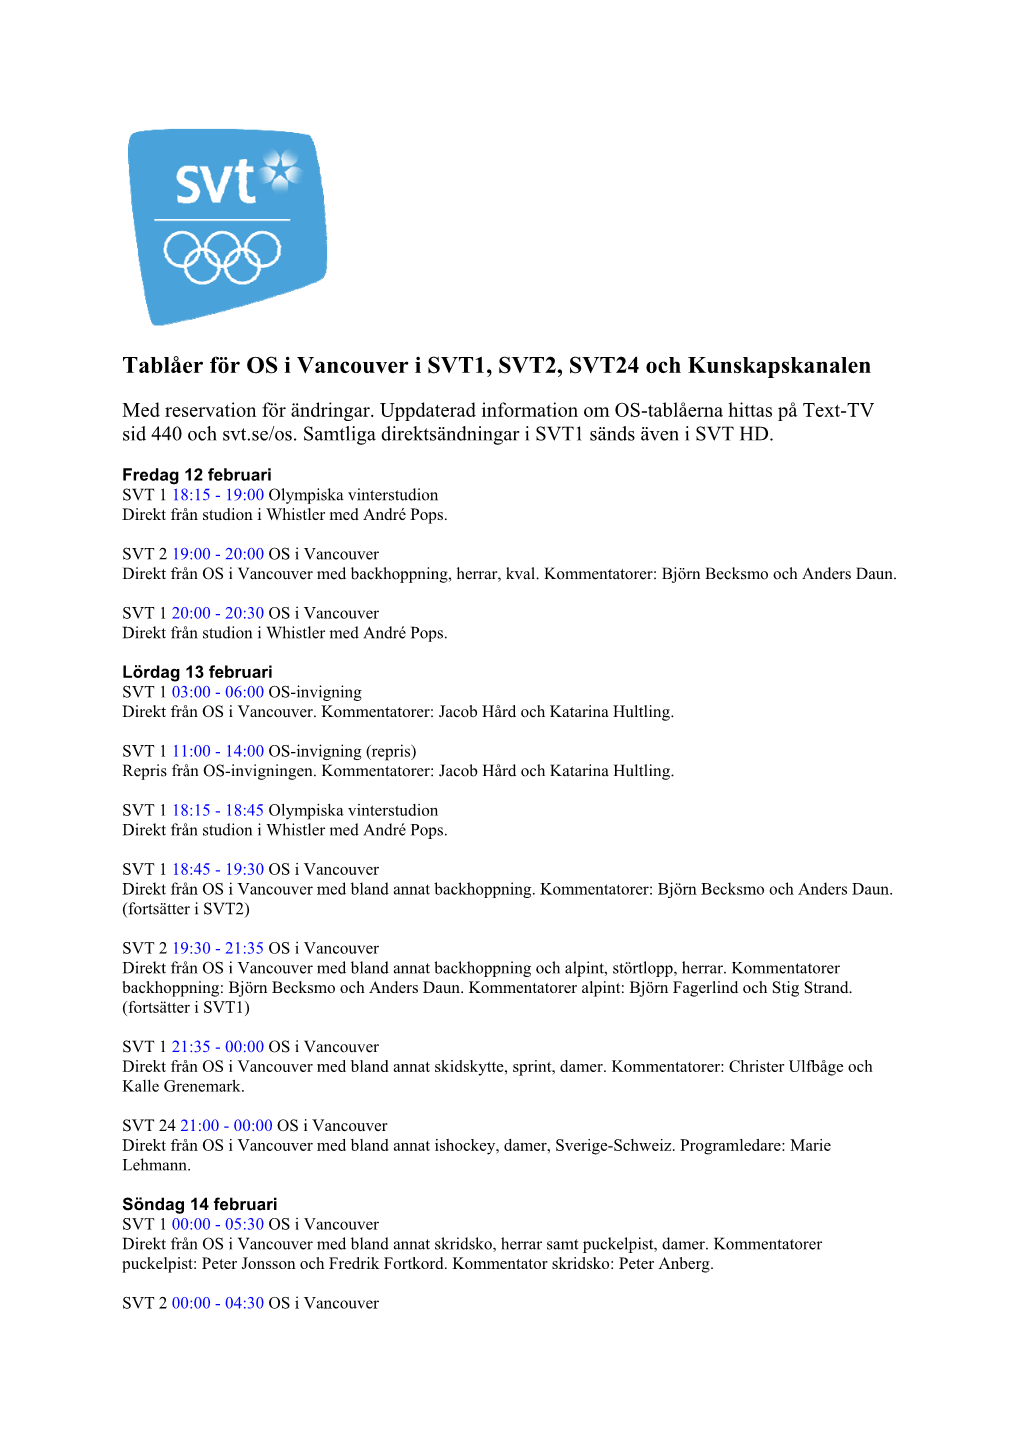 Tablåer OS I Vancouver I SVT1, SVT2, SVT24 Och Kunskapskanalen